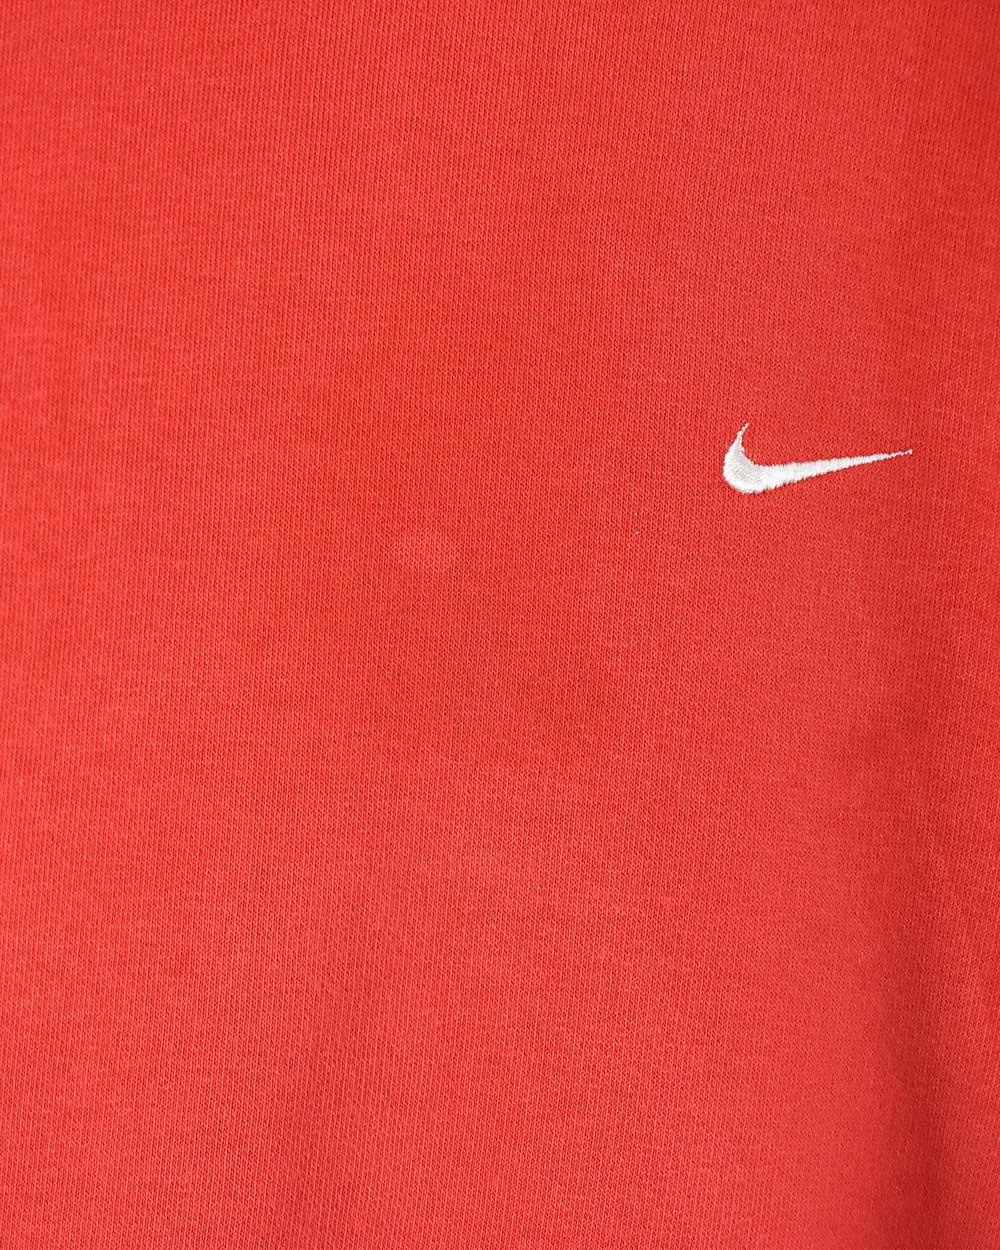 Red Nike Hoodie - Large